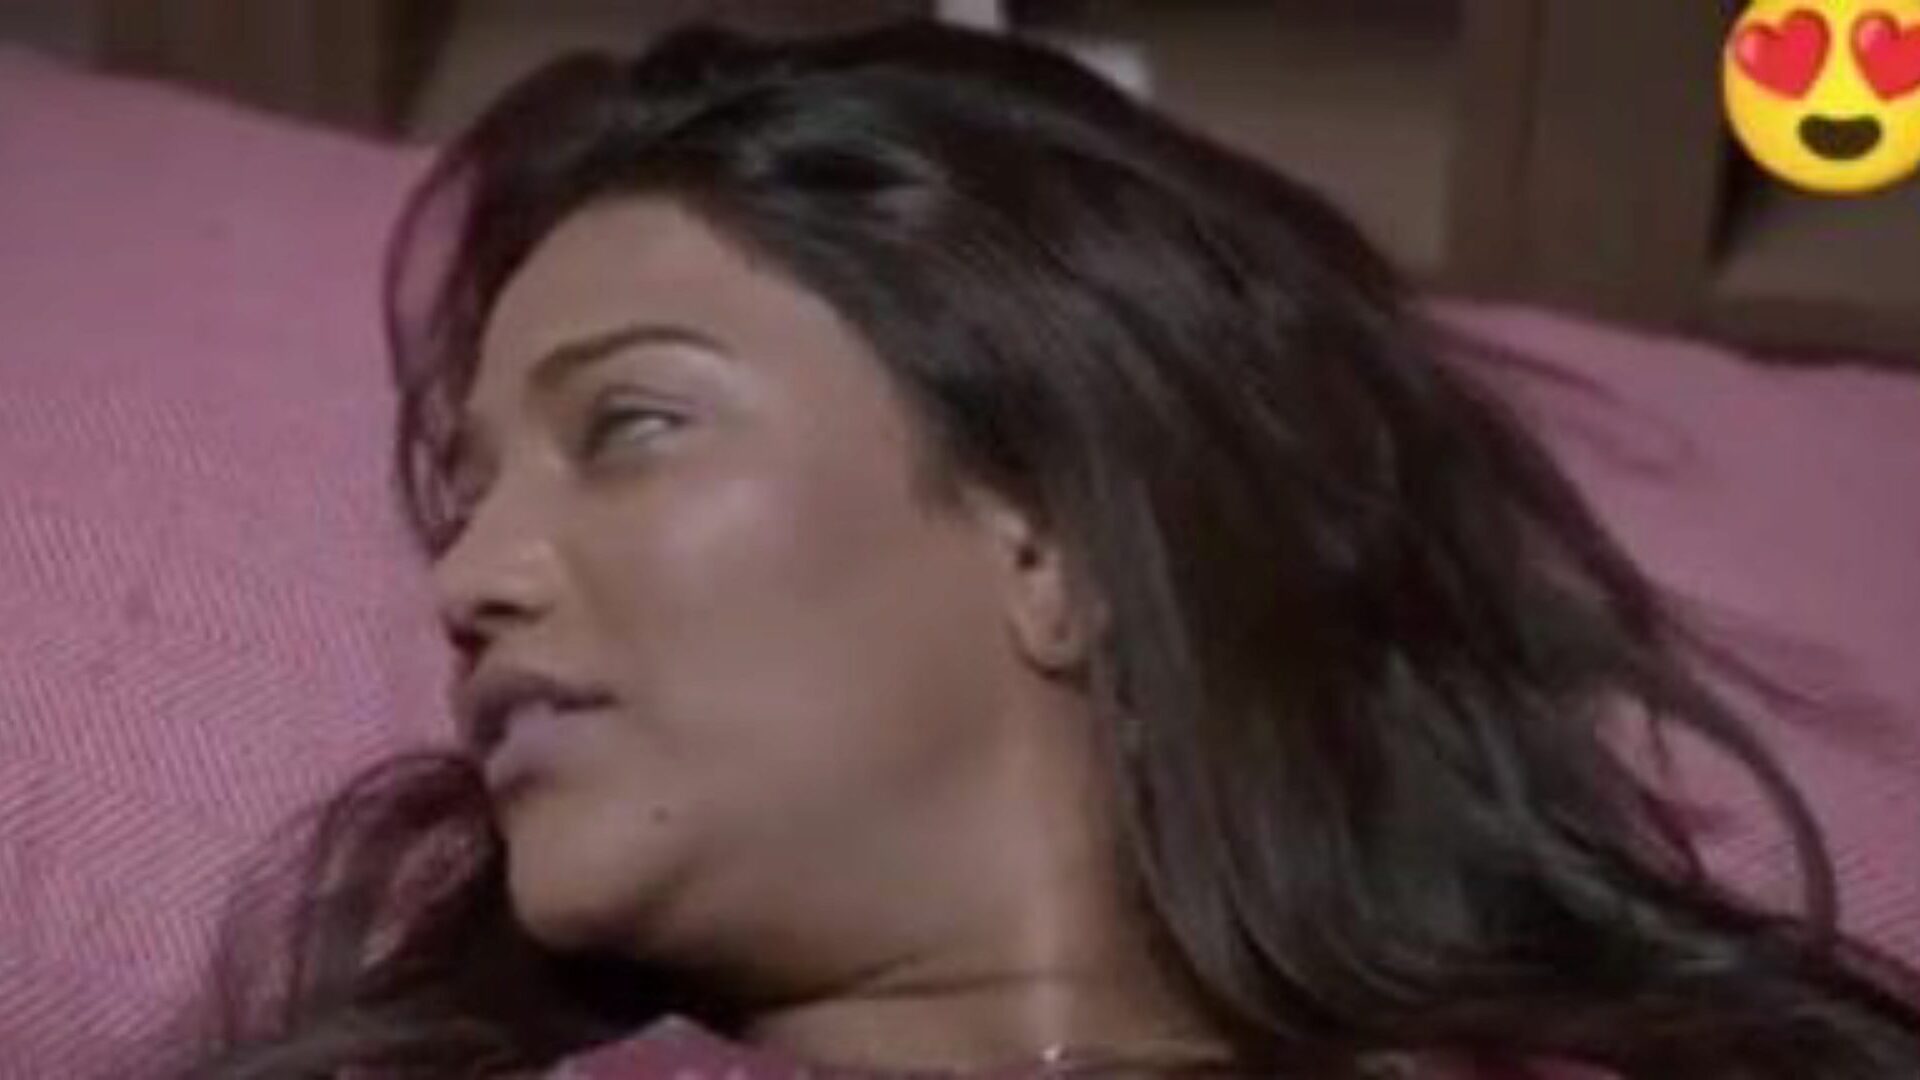 двойной dhamaka сари секс, бесплатно индийское порно-да: xhamster смотреть двойной dhamaka сари секс фильм на xhamster, массивную сношение трубки веб-ресурс с кучей свободного для всех индийских новый секс ххх и хинди сцены порнографии в кино